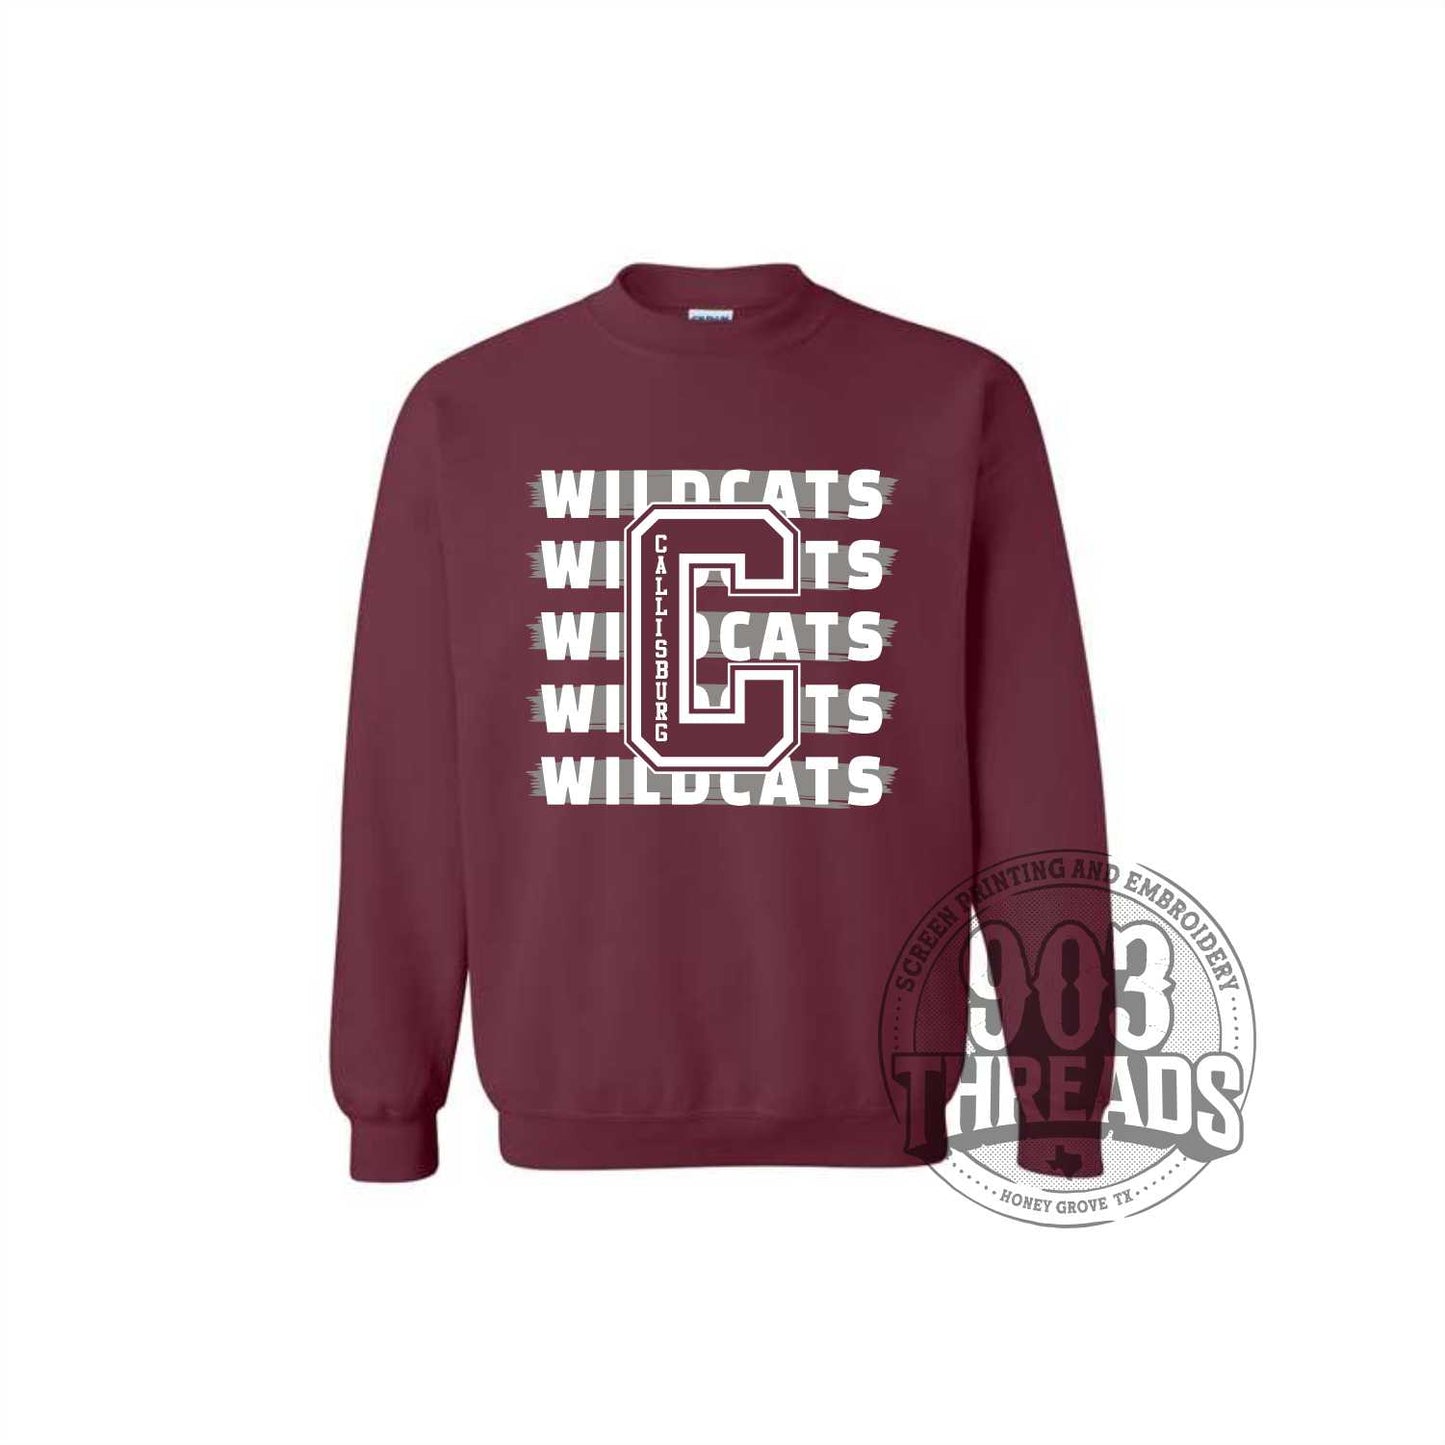 C Wildcat Sweatshirt